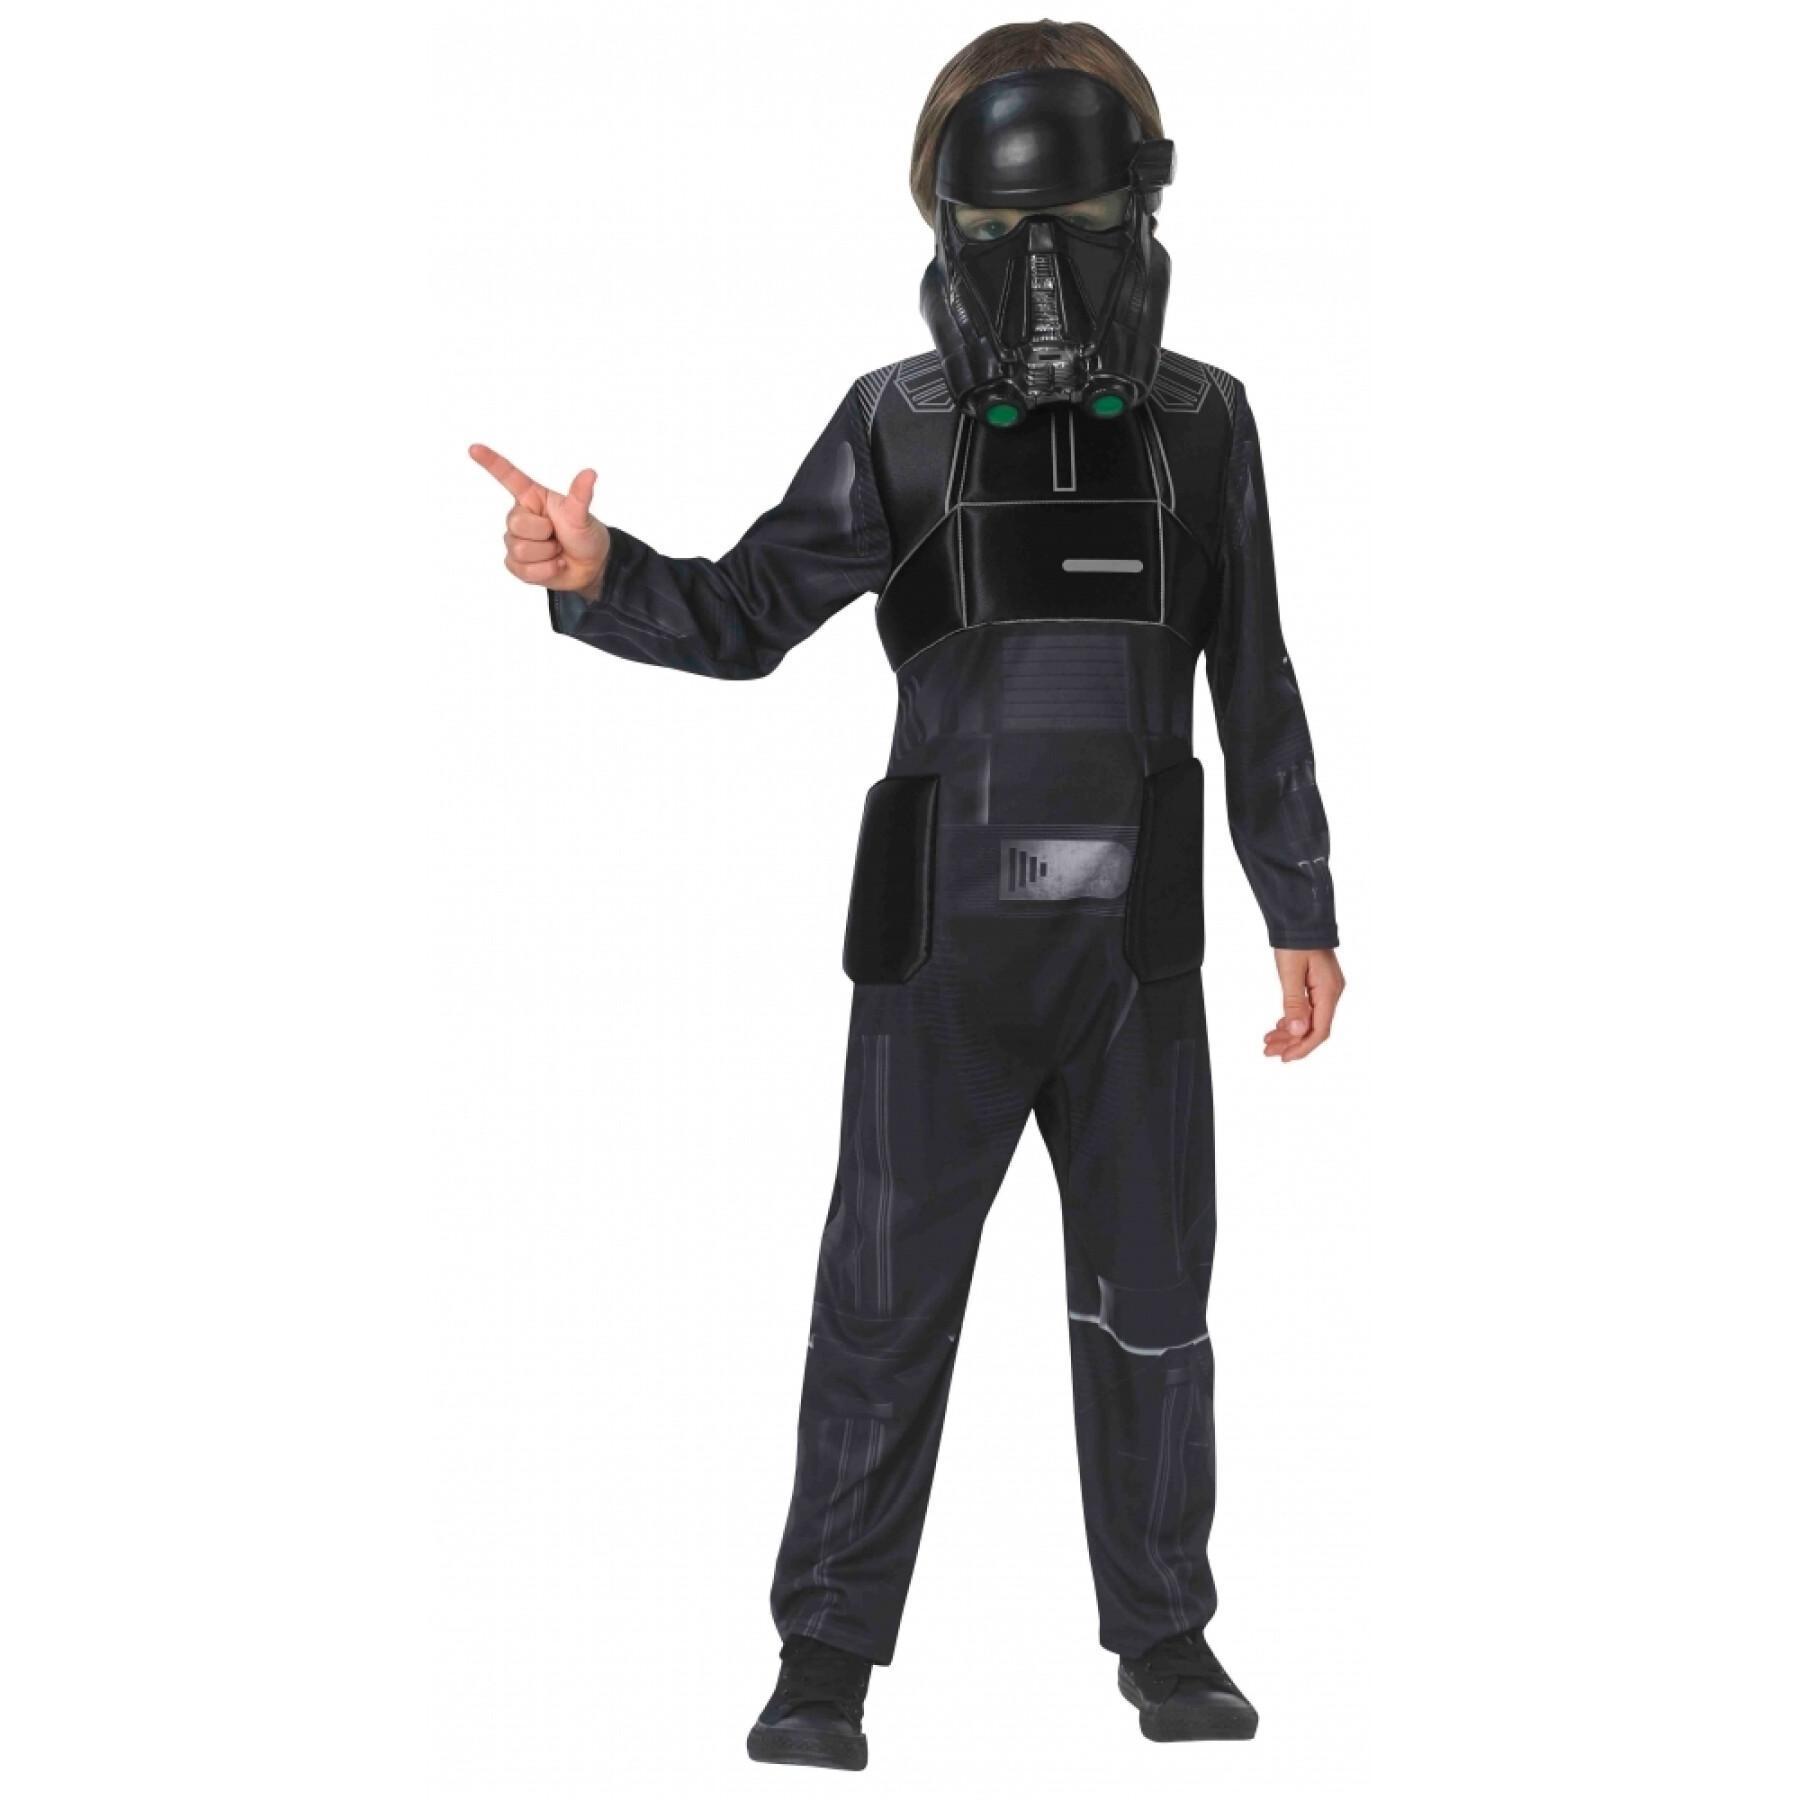 Verkleidung Kostüm Death Trooper Star Wars